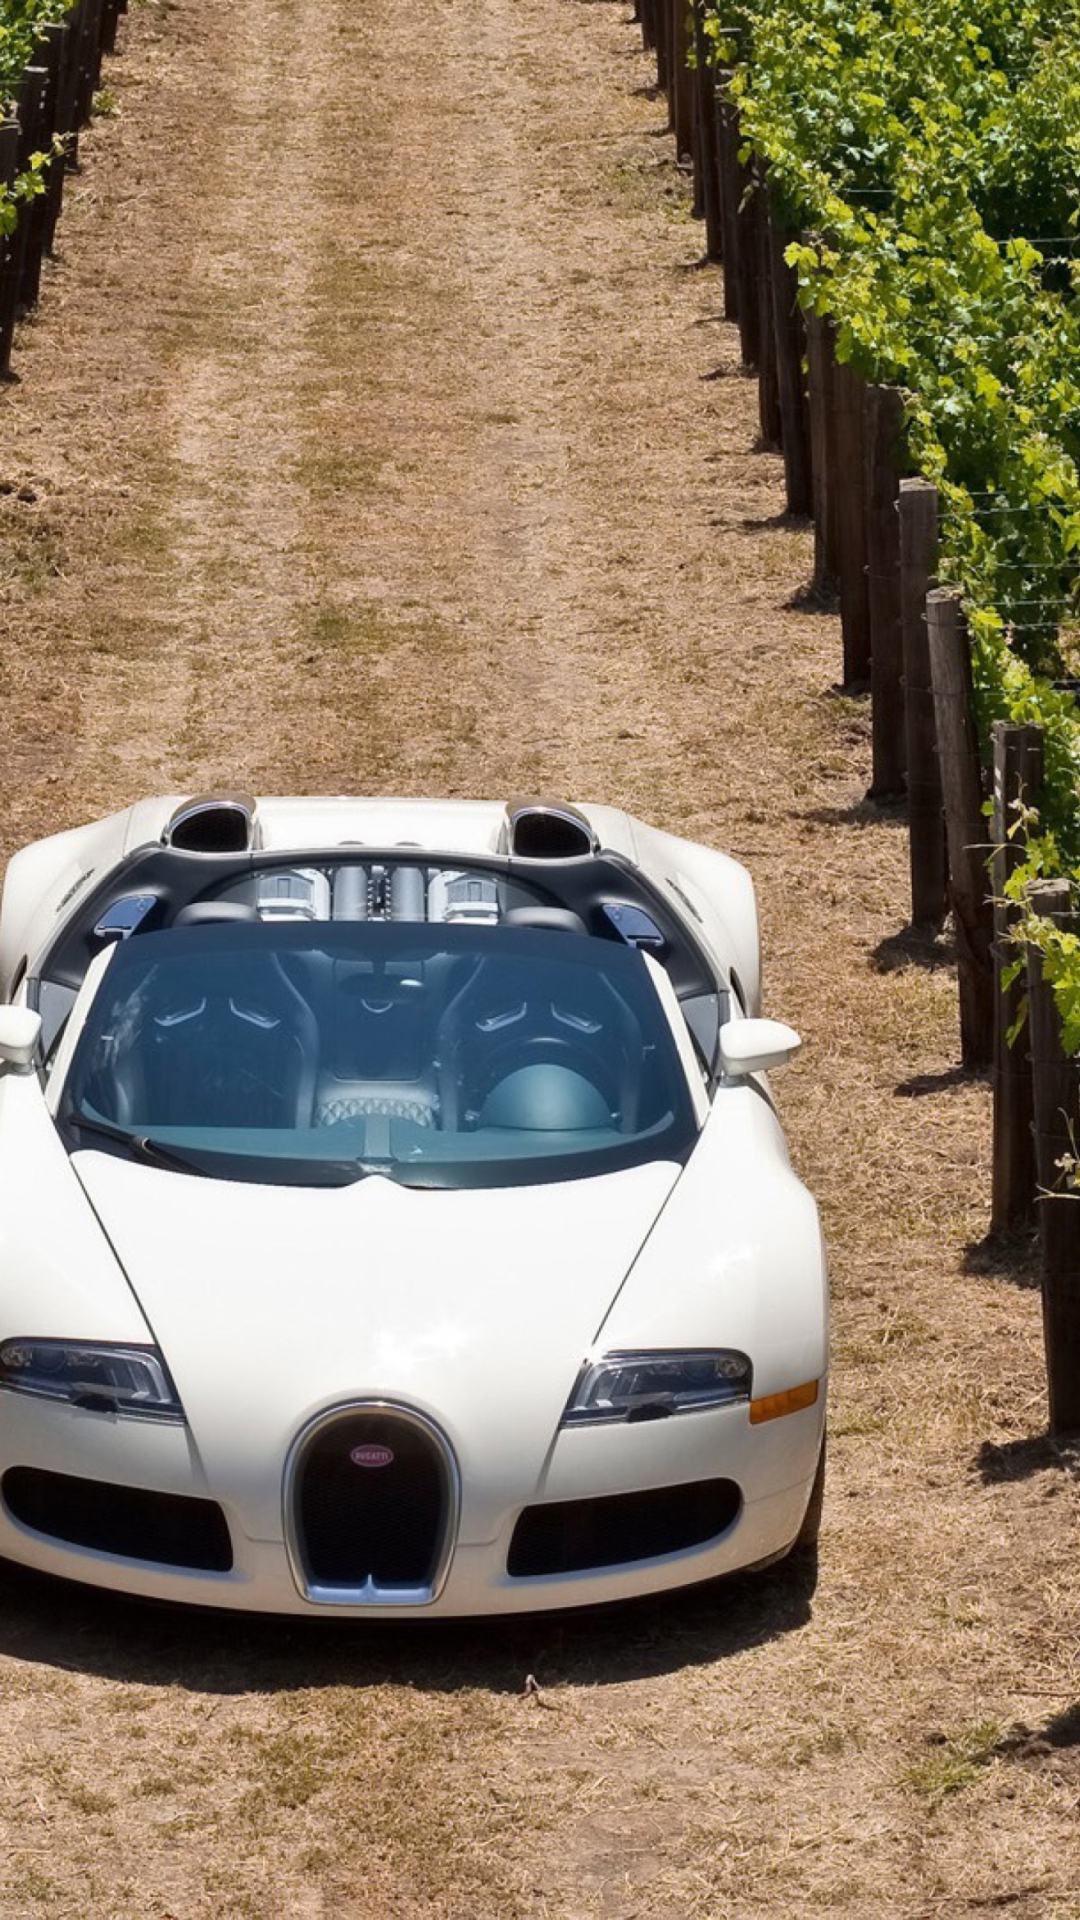 Bugatti Veyron In Vineyard screenshot #1 1080x1920